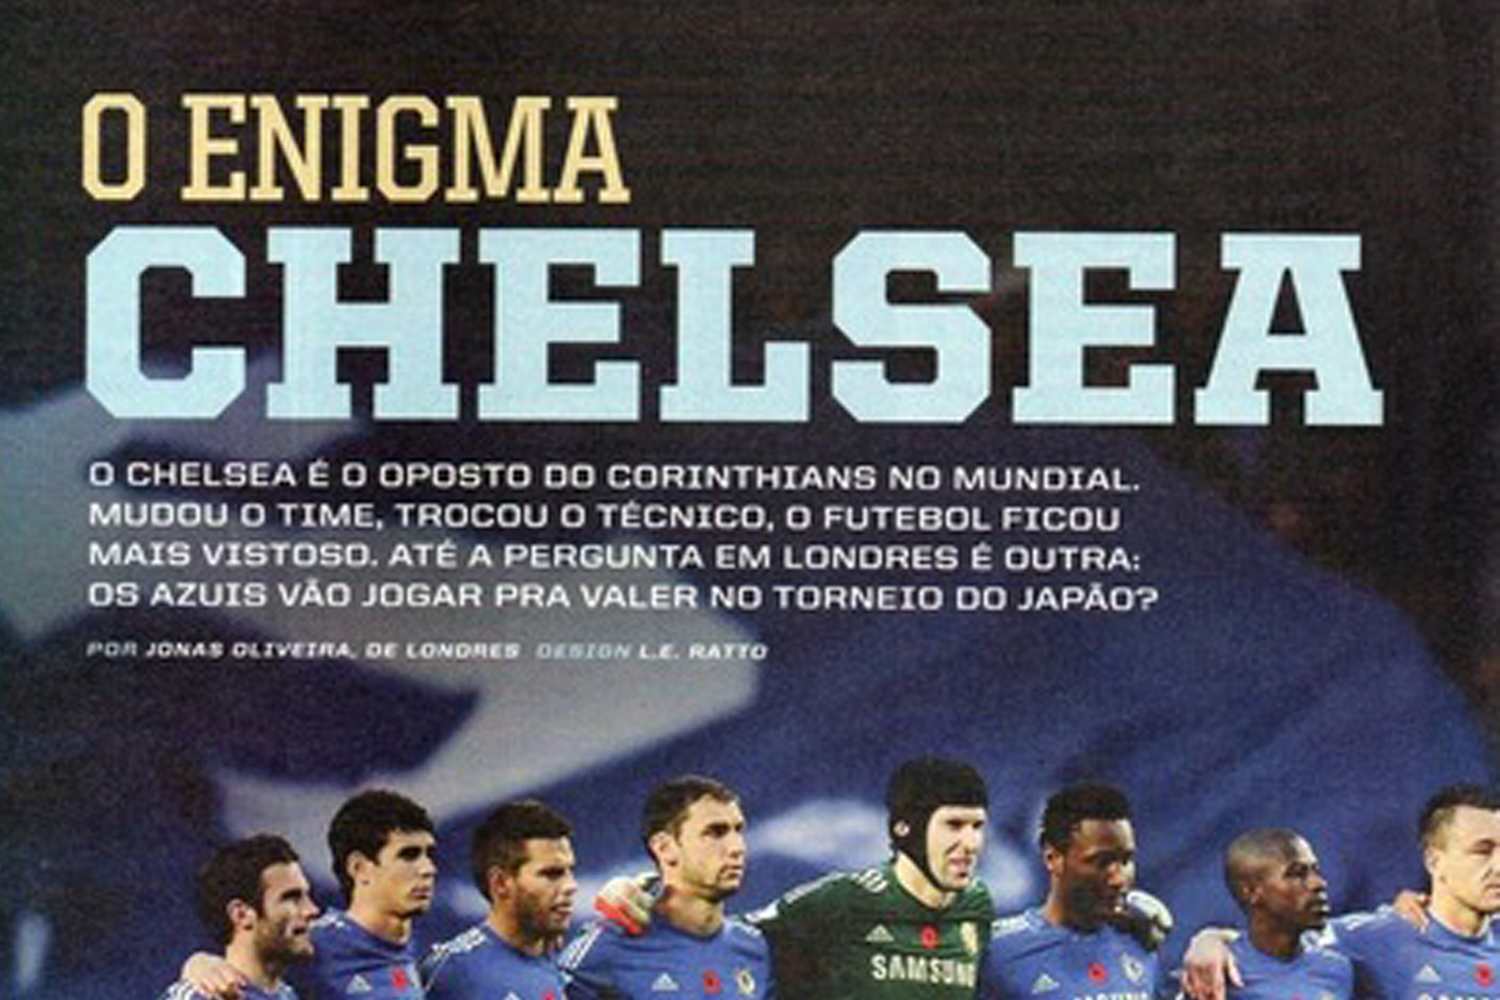 O enigma Chelsea: como os ingleses eram vistos no Mundial em 2012